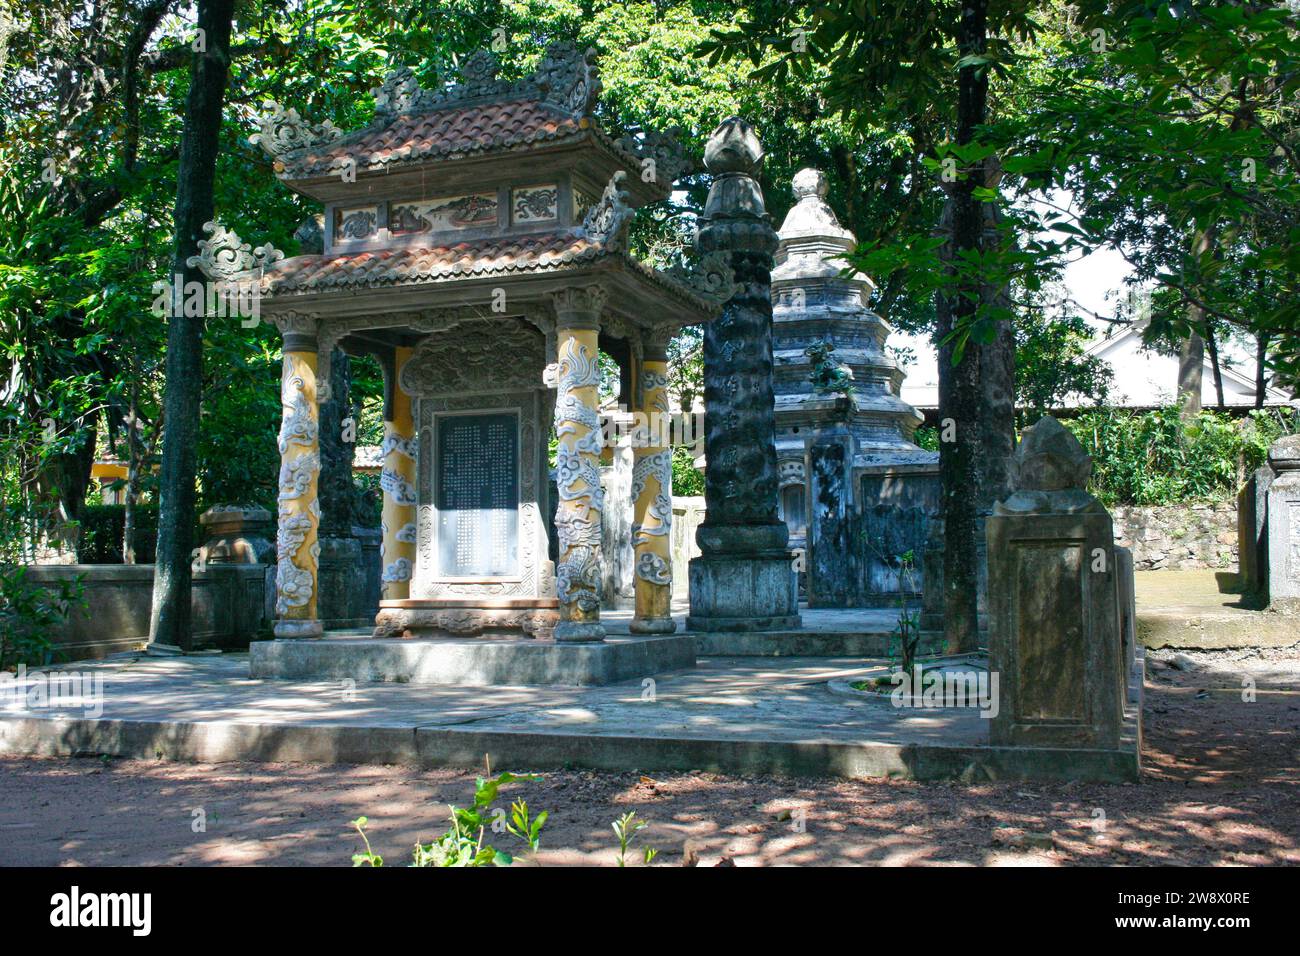 La pagoda tu Hieu è un remoto tempio buddista del 1840 circondato da una foresta con tombe, un lago artificiale e un'atmosfera serena a Hue, nel Vietnam centrale. Foto Stock